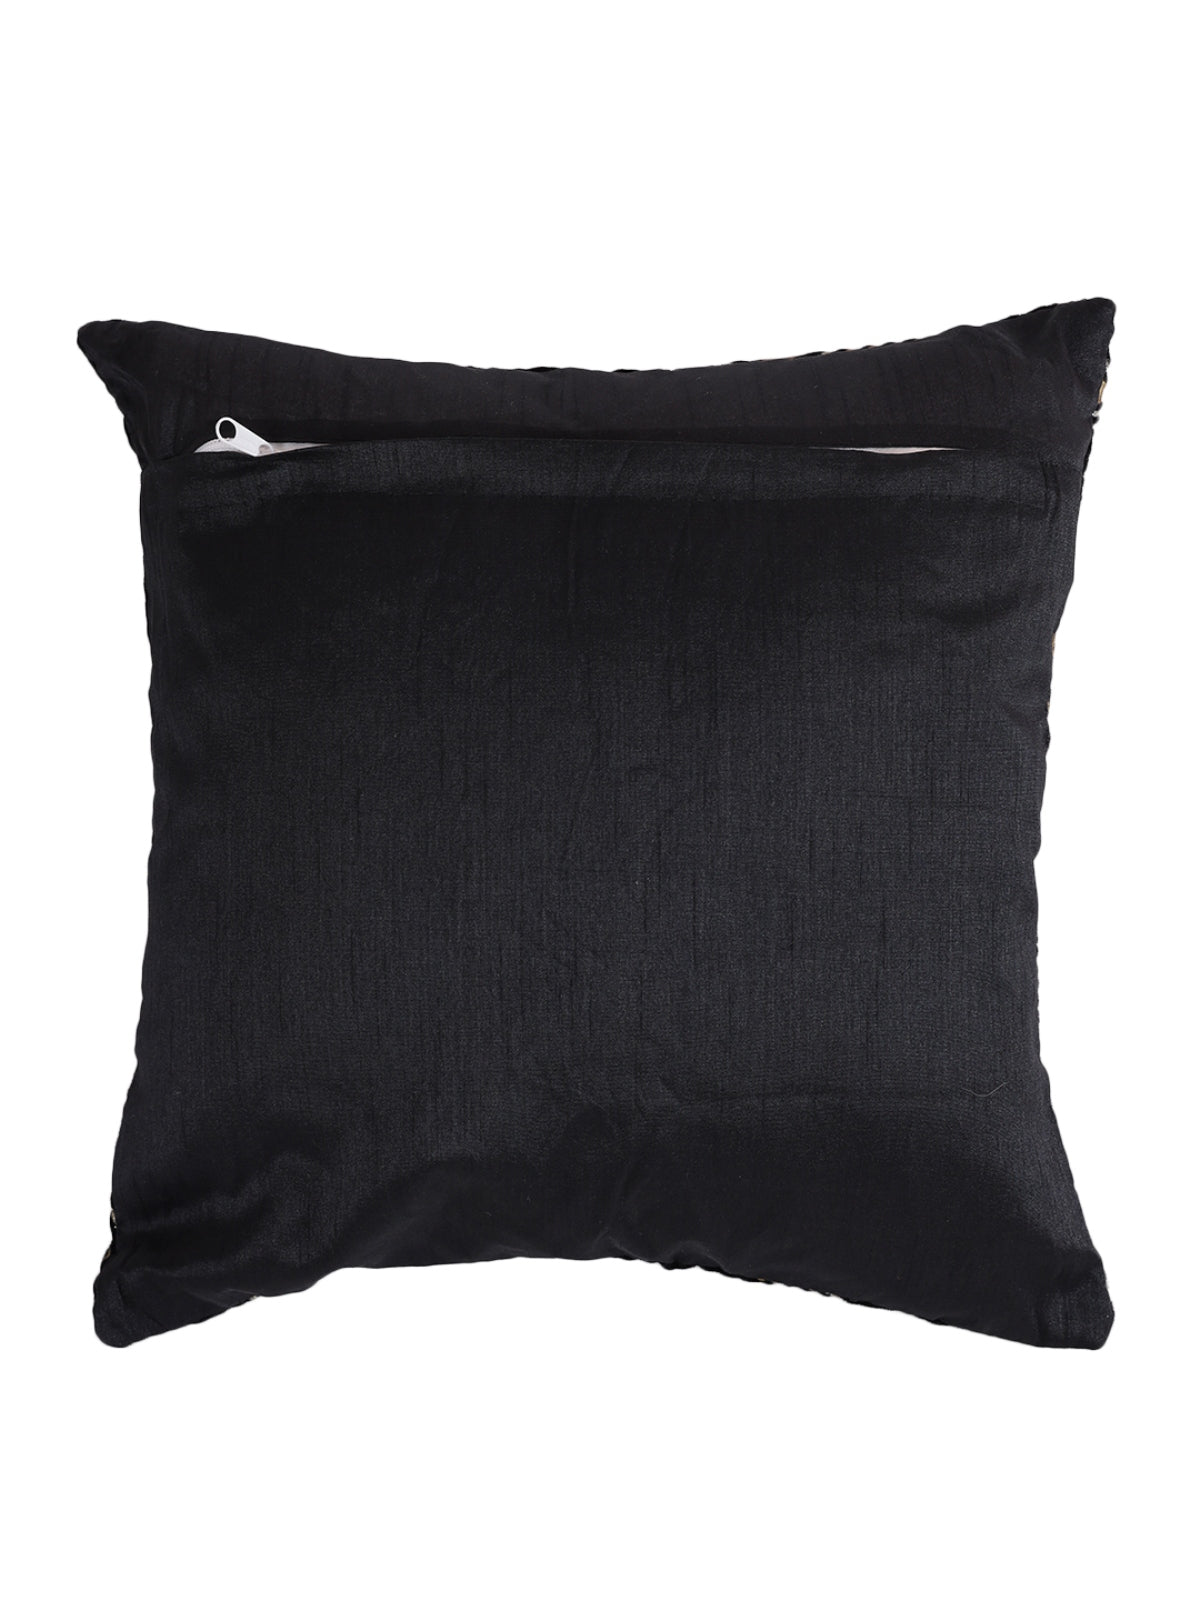 Velvet Leaf Designer Cushion Cover 16x16 Inche, Set of 5 - Black